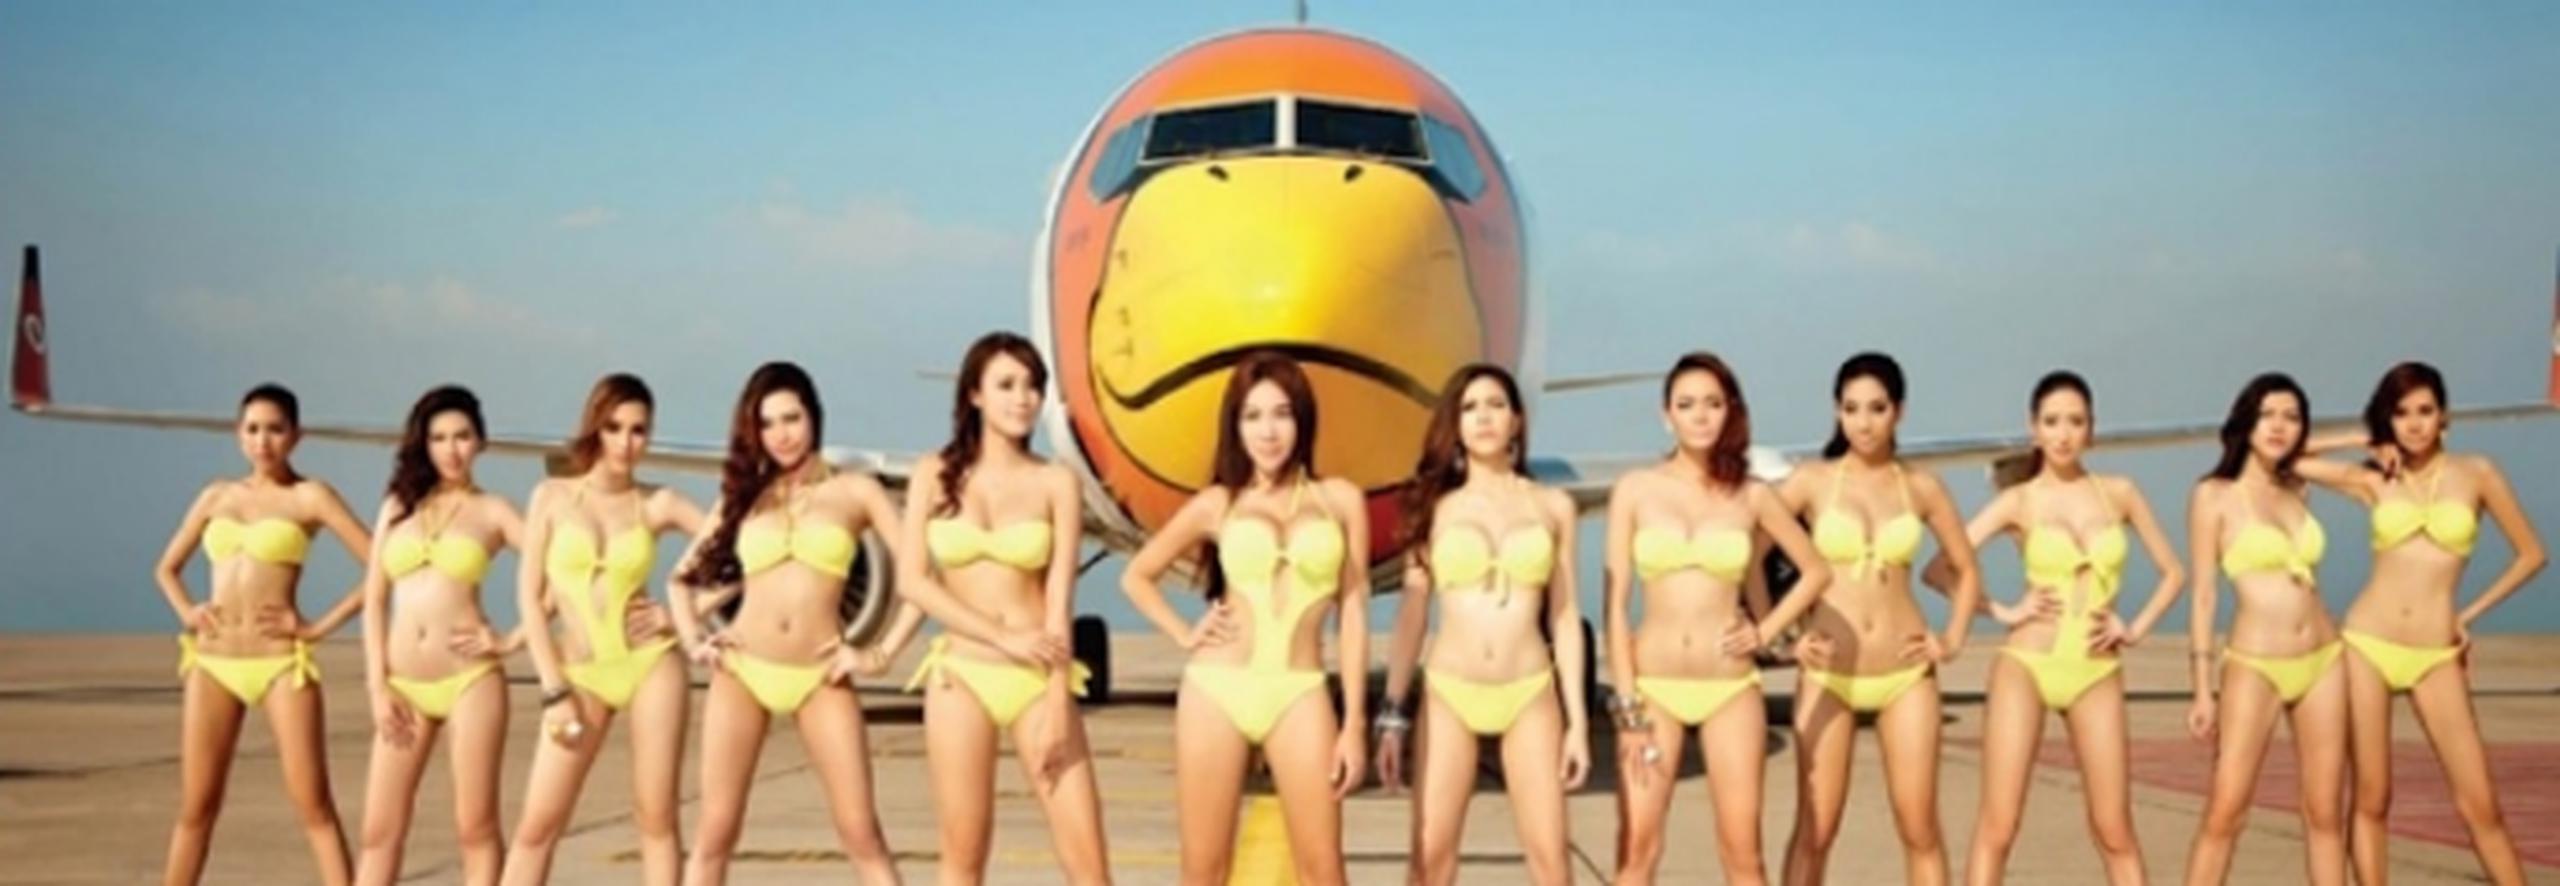 En el controversial calendario, aparecen 12 modelos de la Revista Maxim, luciendo bikinis amarillos color de la marca, con uno de sus aviones de fondo.  (CNN México/ Nok Air)